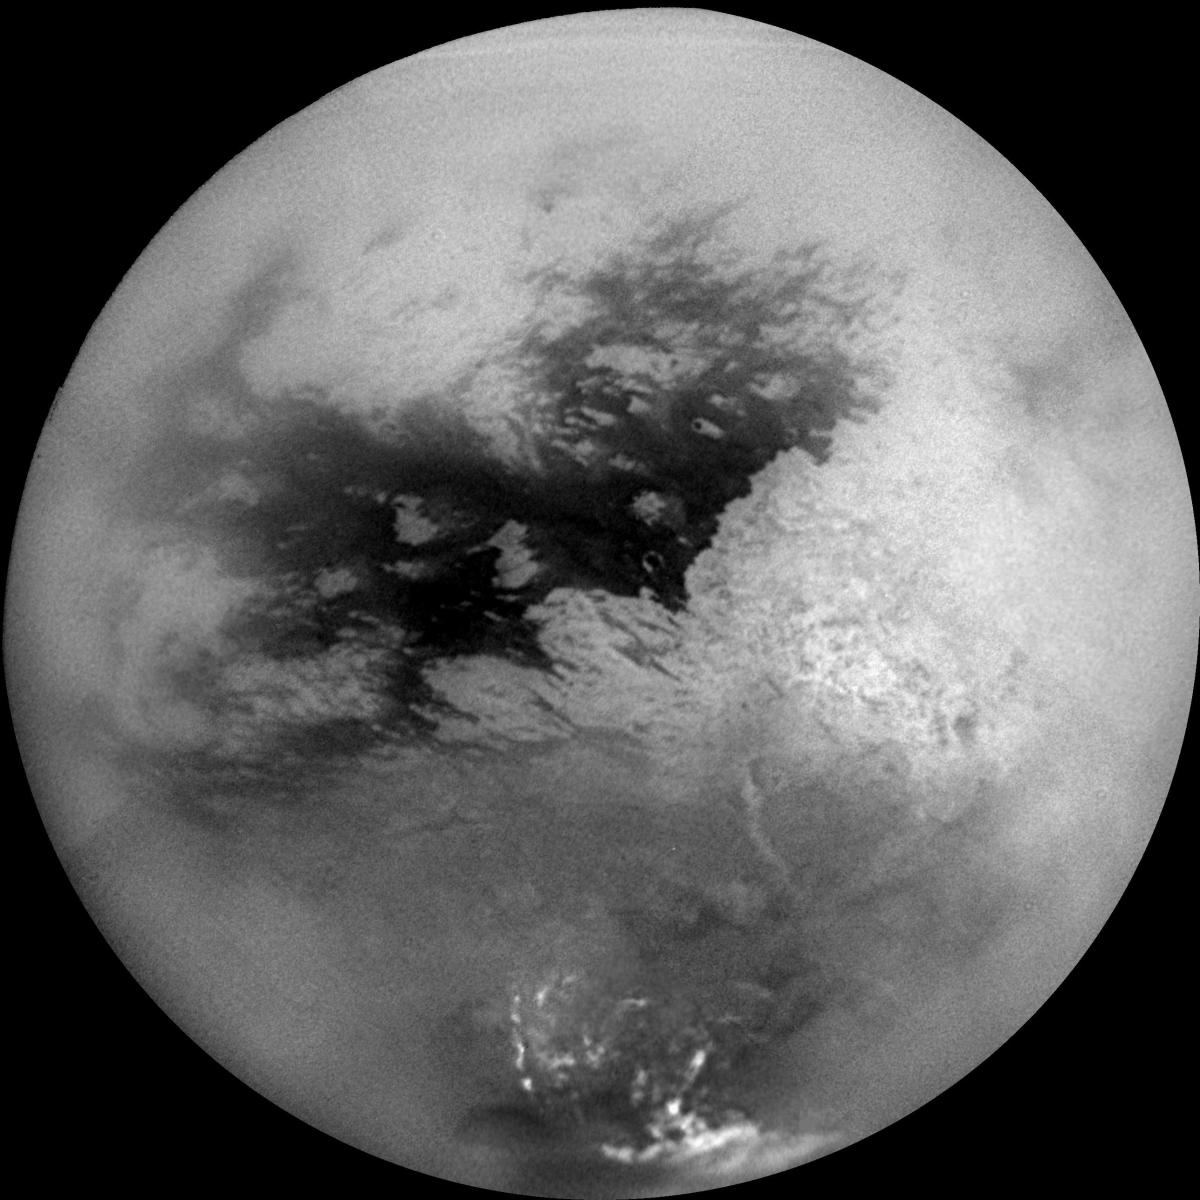 Cassini's Views of Titan